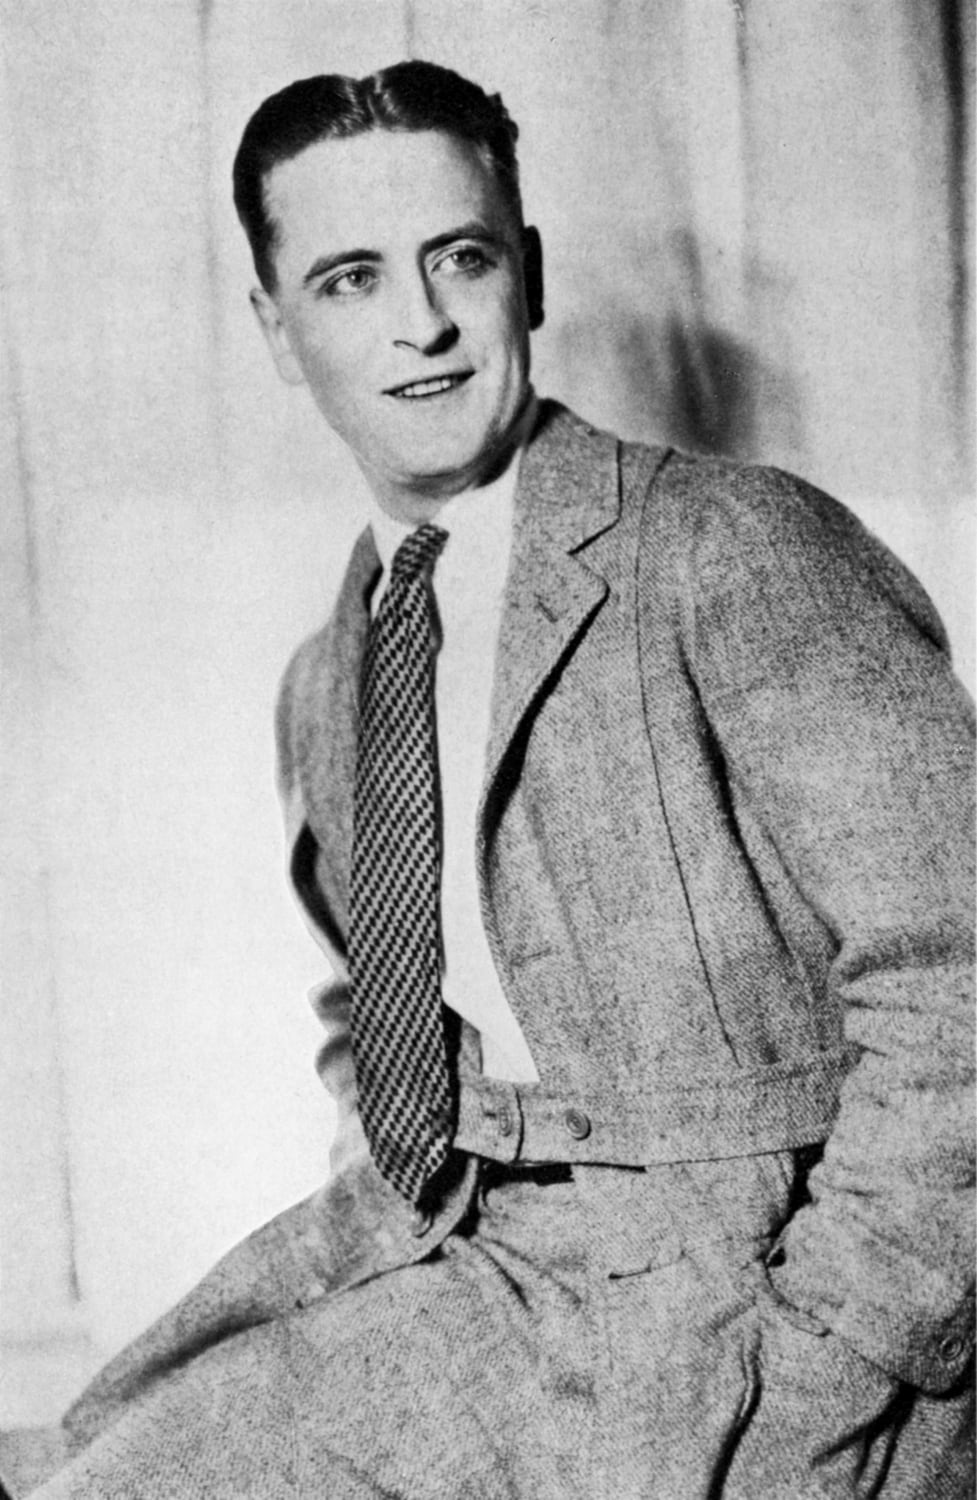 "Il signor Scott Fitzgerald merita una bella scossa. Il grande Gatsby è una storia assurda, sia considerata come romanzo, melodramma, o mera registrazione di New York" – L.P. Hartley, The Saturday Review, 1925